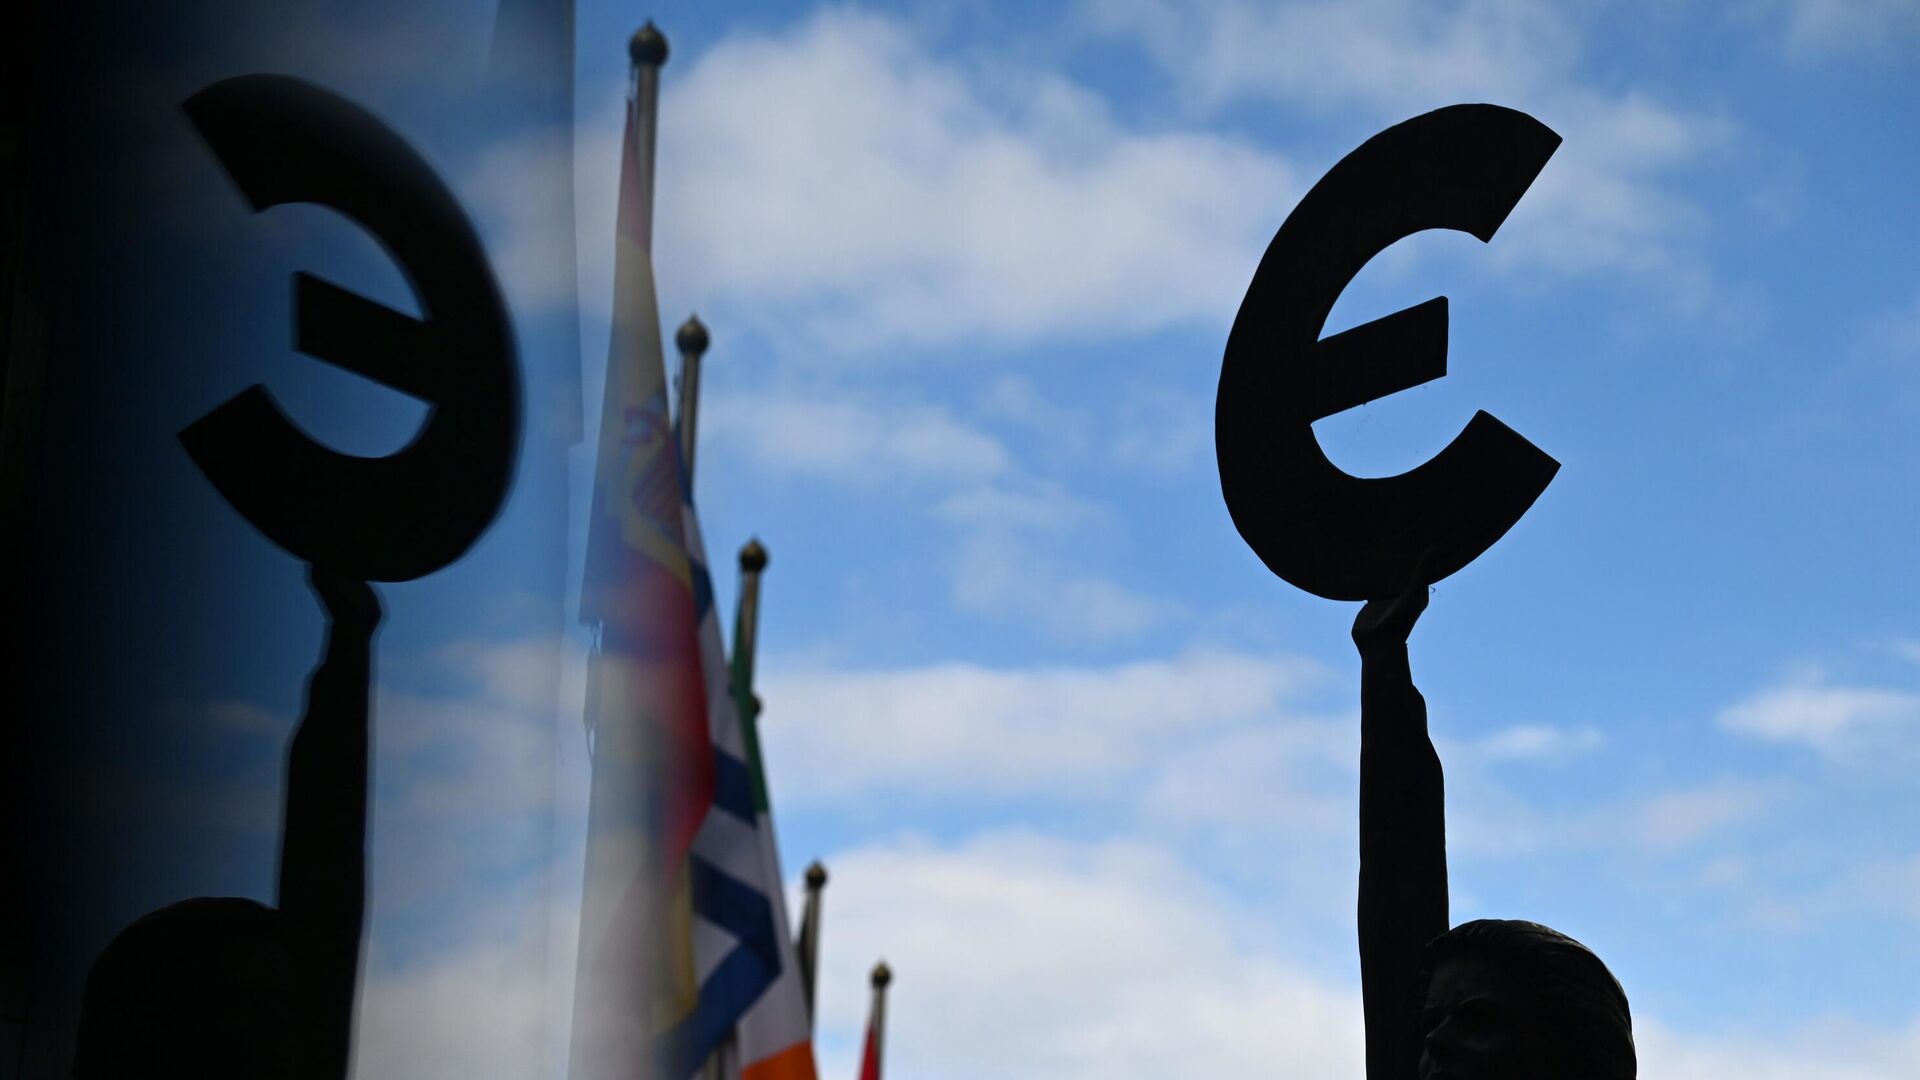 Памятник-скульптура знаку евро у здания штаб-квартиры Европейского парламента в Брюсселе - РИА Новости, 1920, 09.11.2022